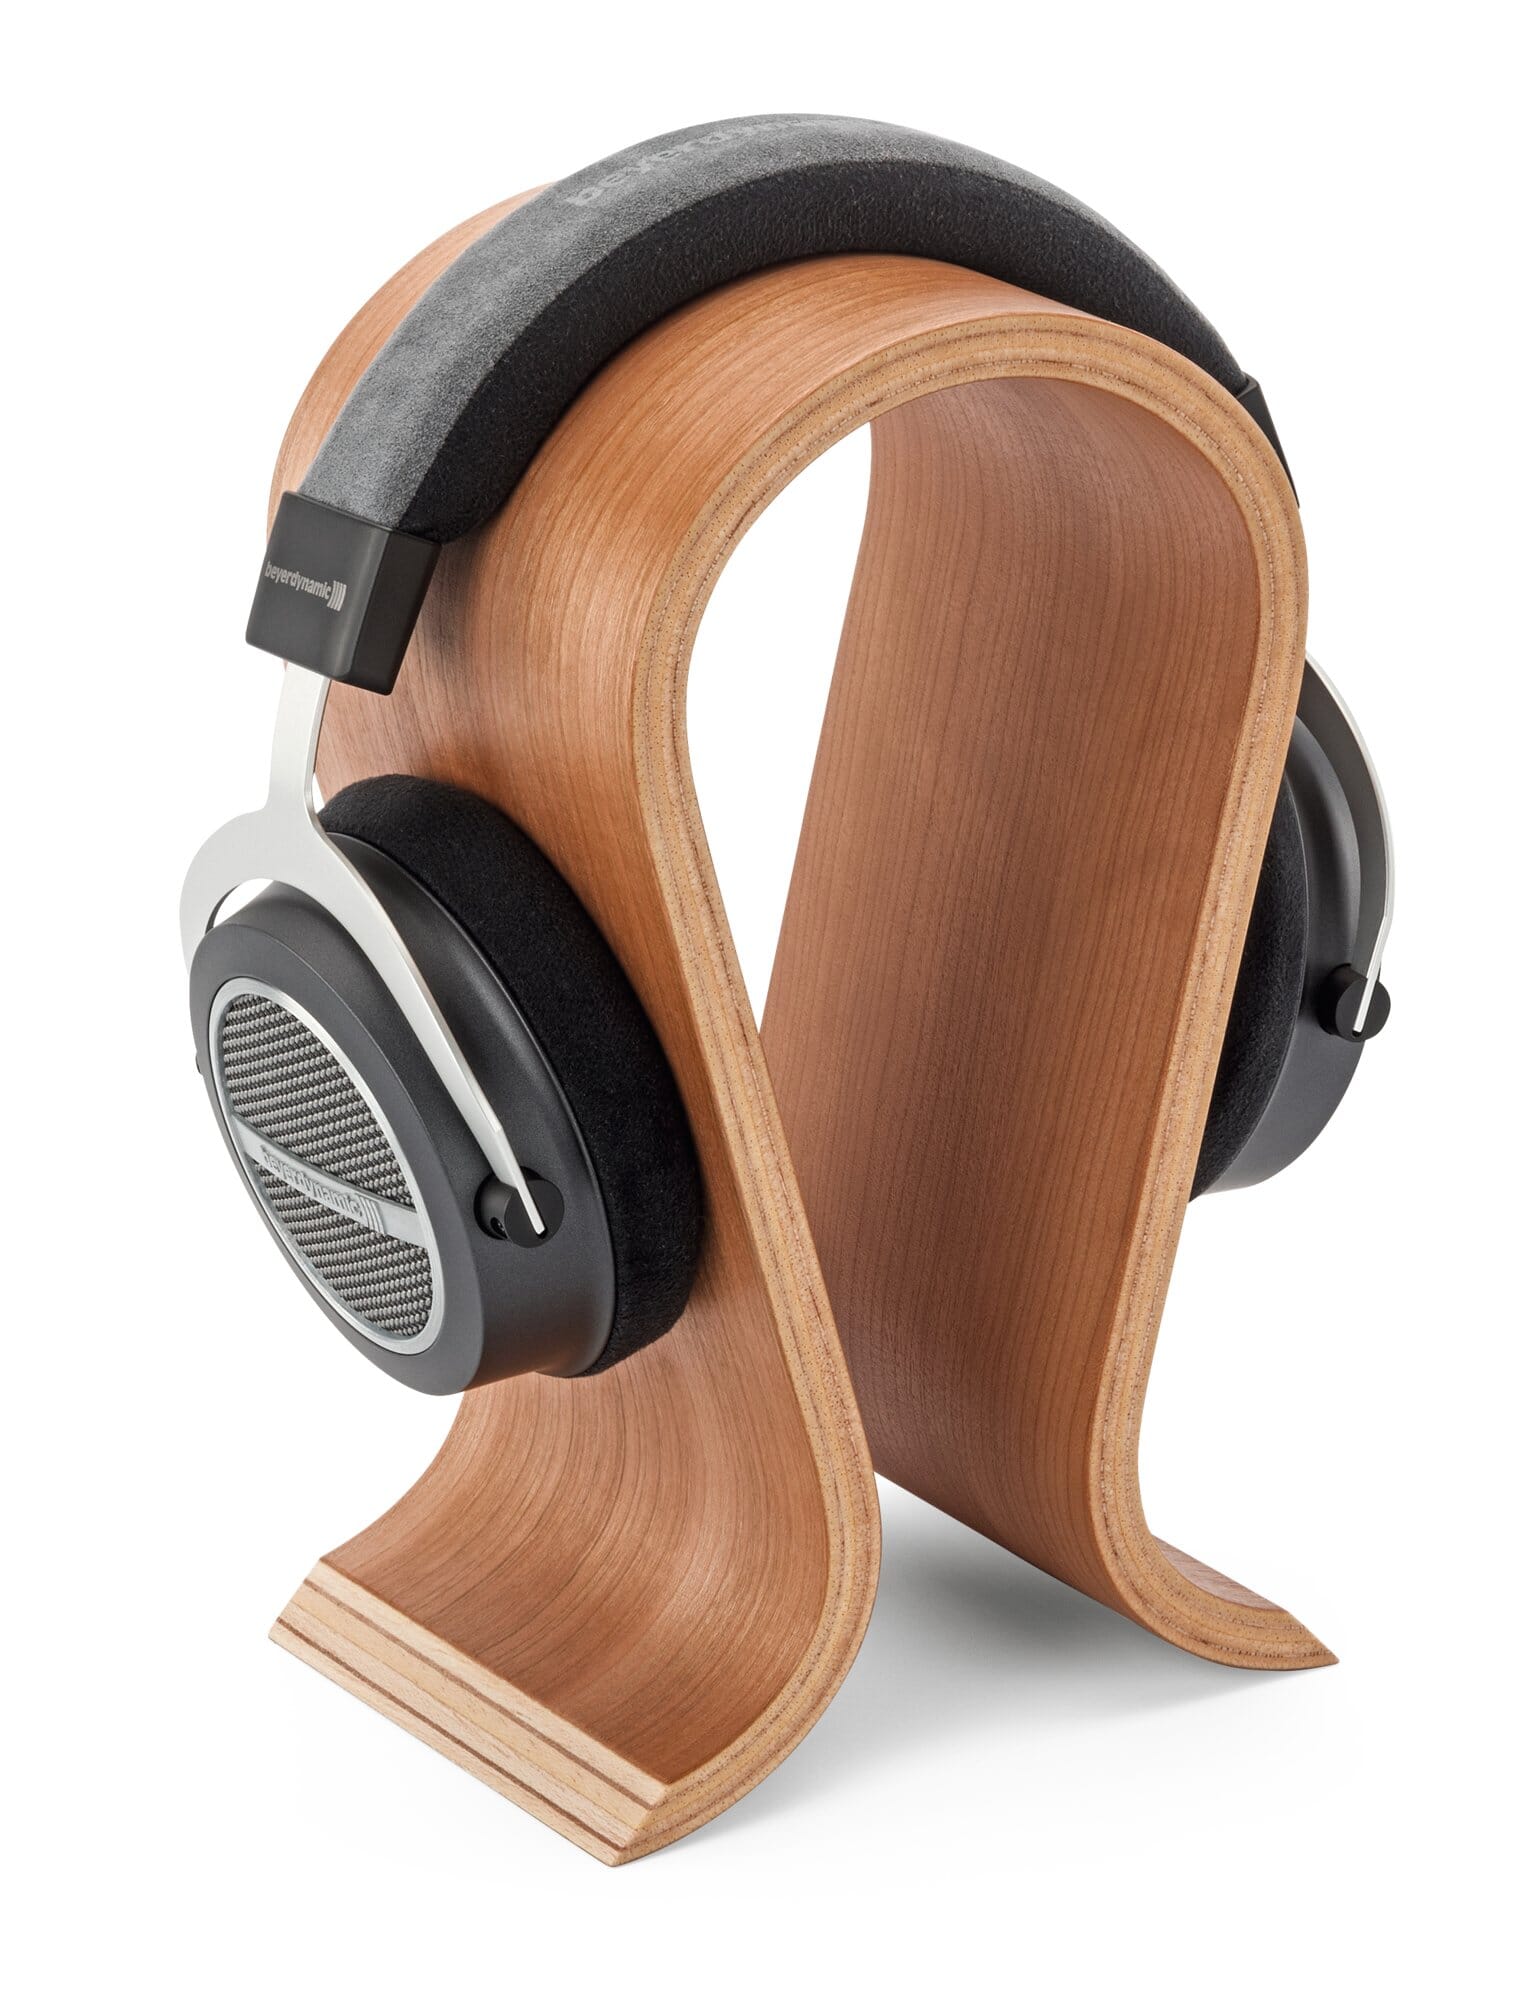 https://assets.manufactum.de/p/012/012648/12648_06.jpg/headphone-stand-cherry-wood.jpg